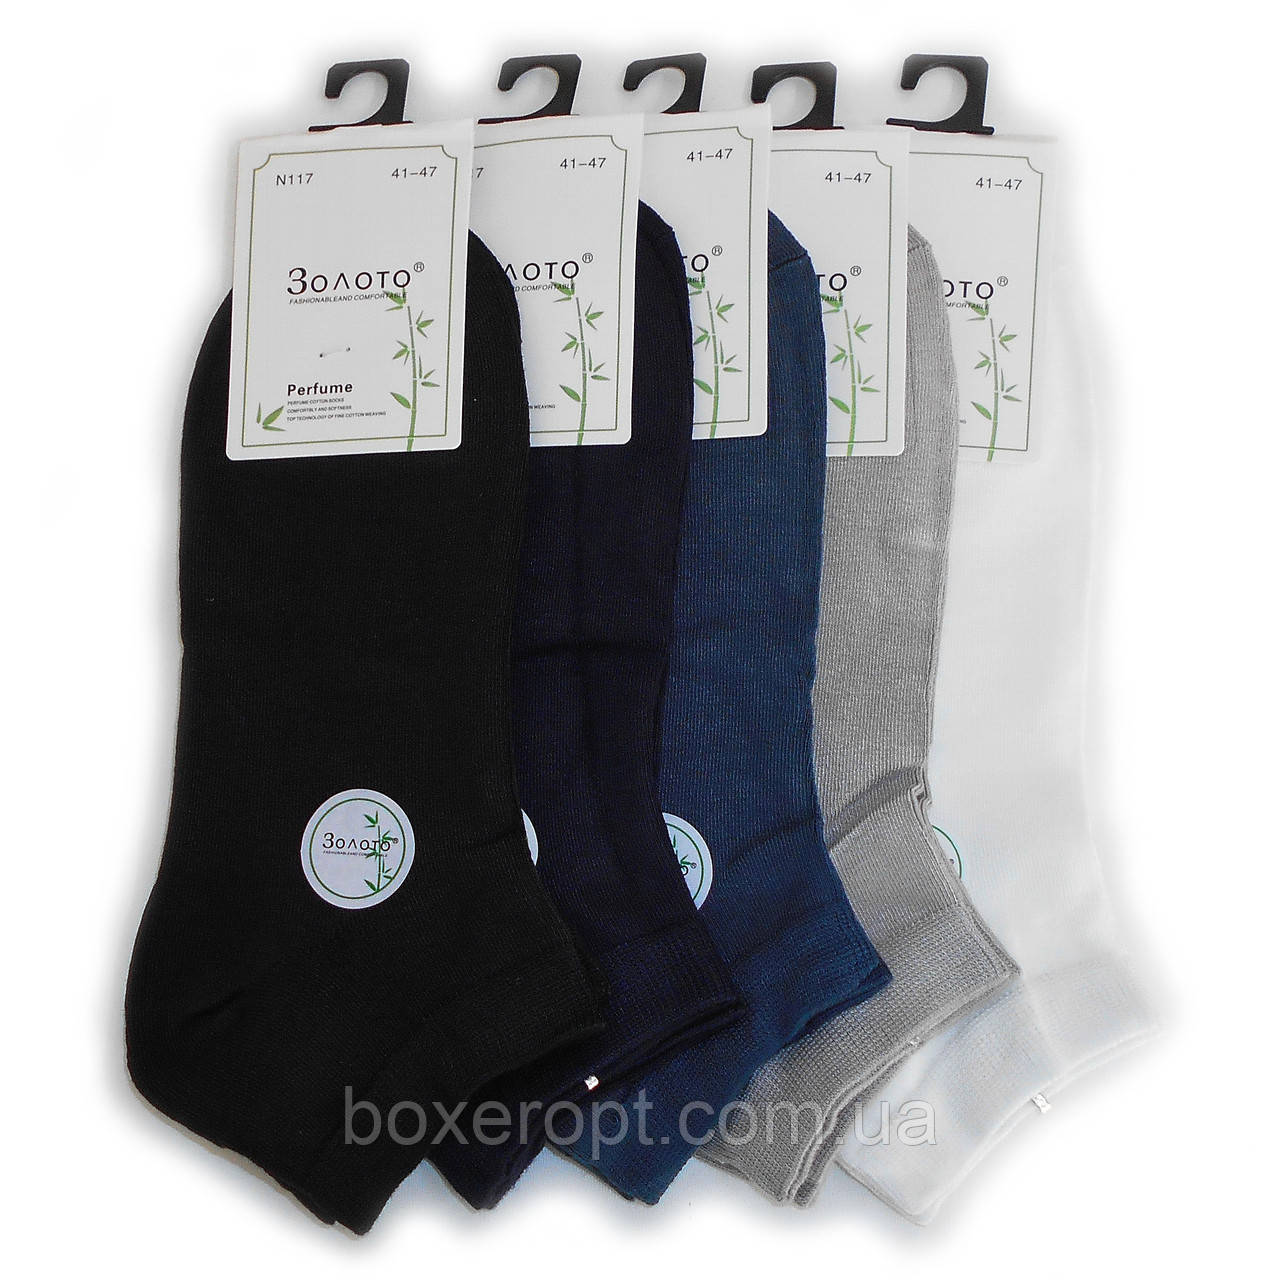 Чоловічі бамбукові шкарпетки Золото - 22.00 грн./пара (ароматизовані, N117)